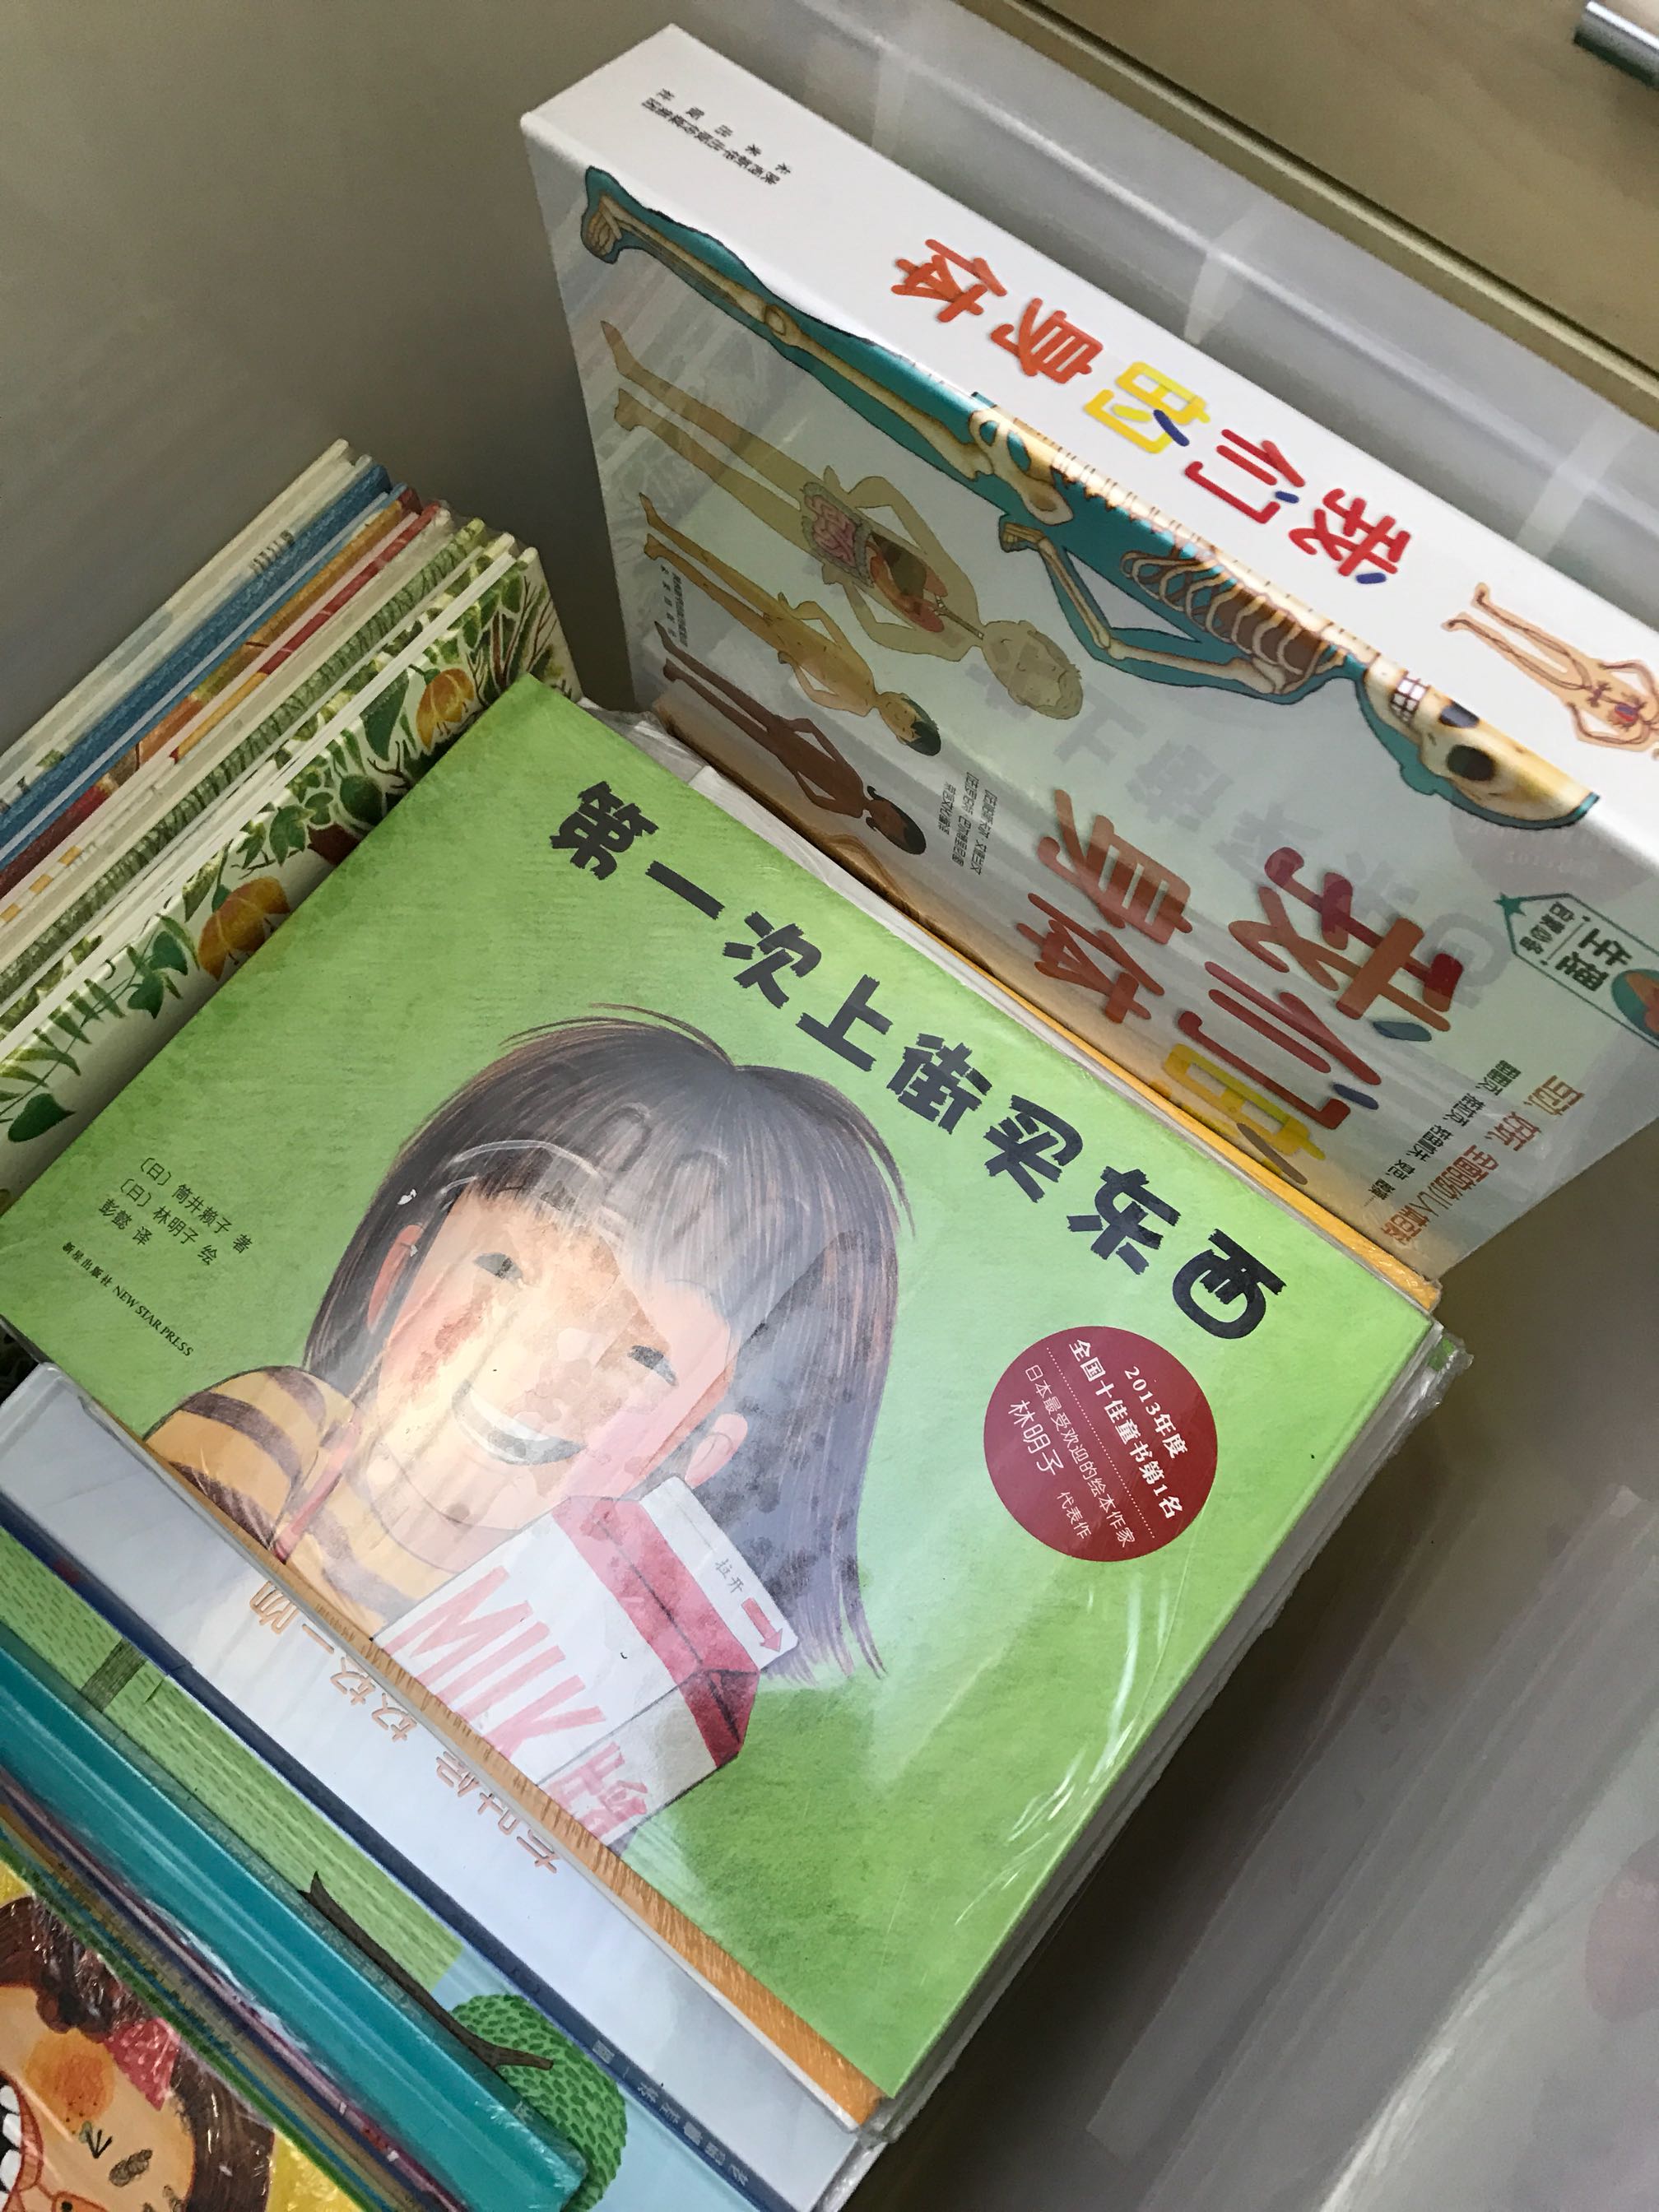 双十一又买了一堆，买书认准。剁手剁不完。希望孩子有个好的阅读习惯，妈妈和孩子一起成长。